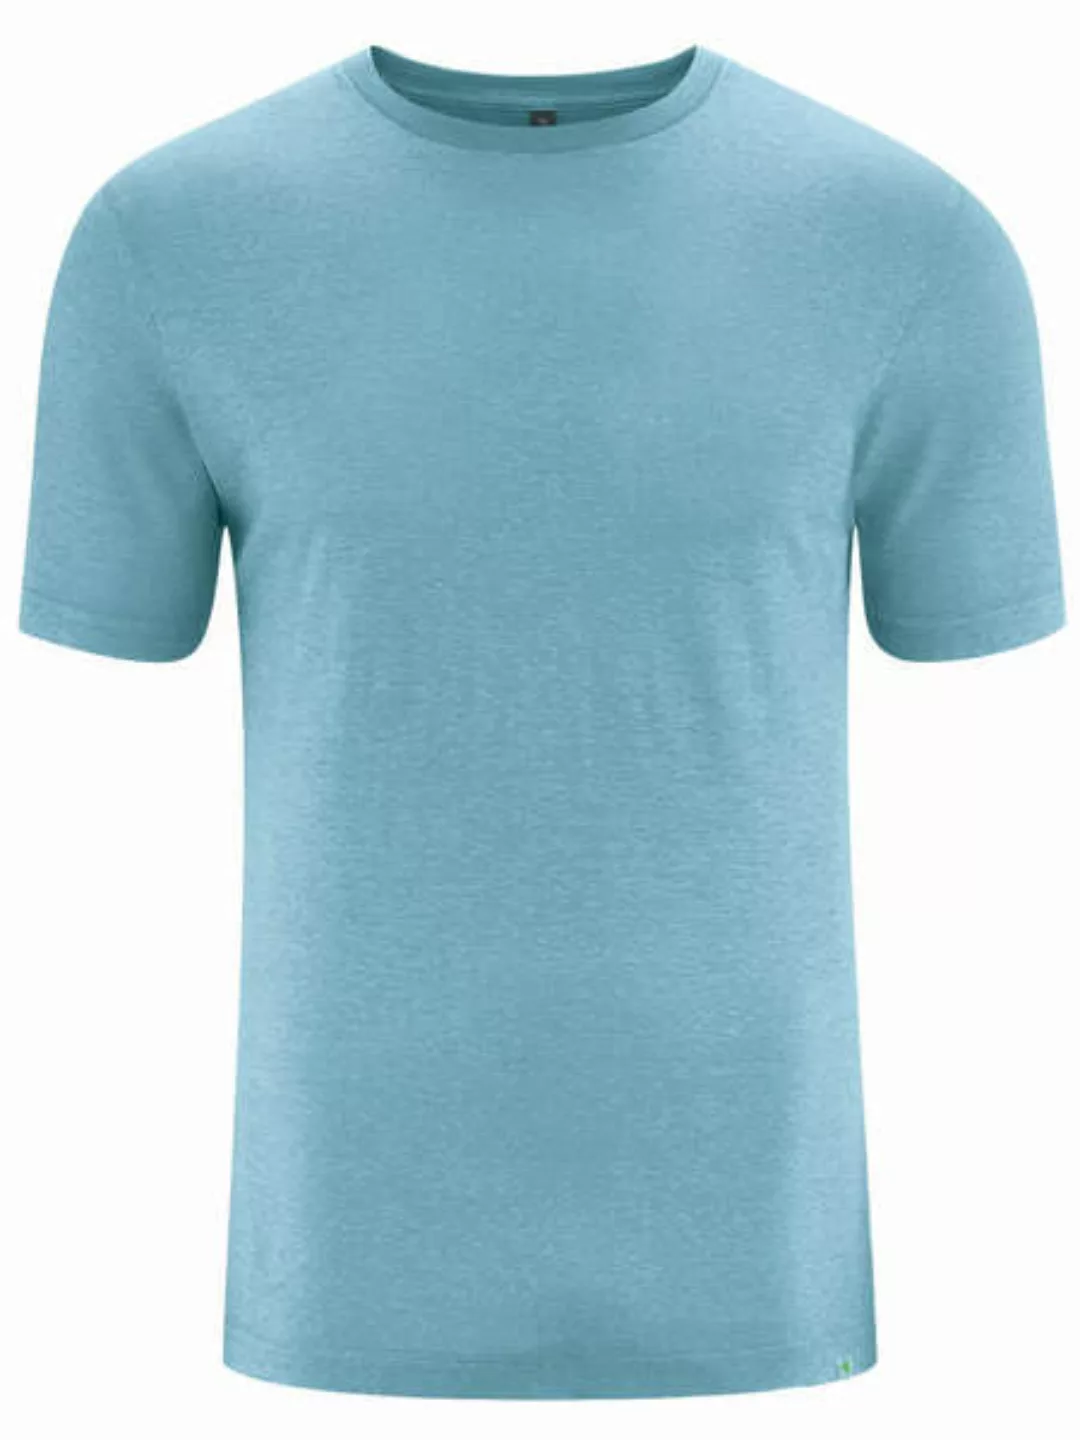 Hempage Herren T-shirt Hanf/bio-baumwolle günstig online kaufen